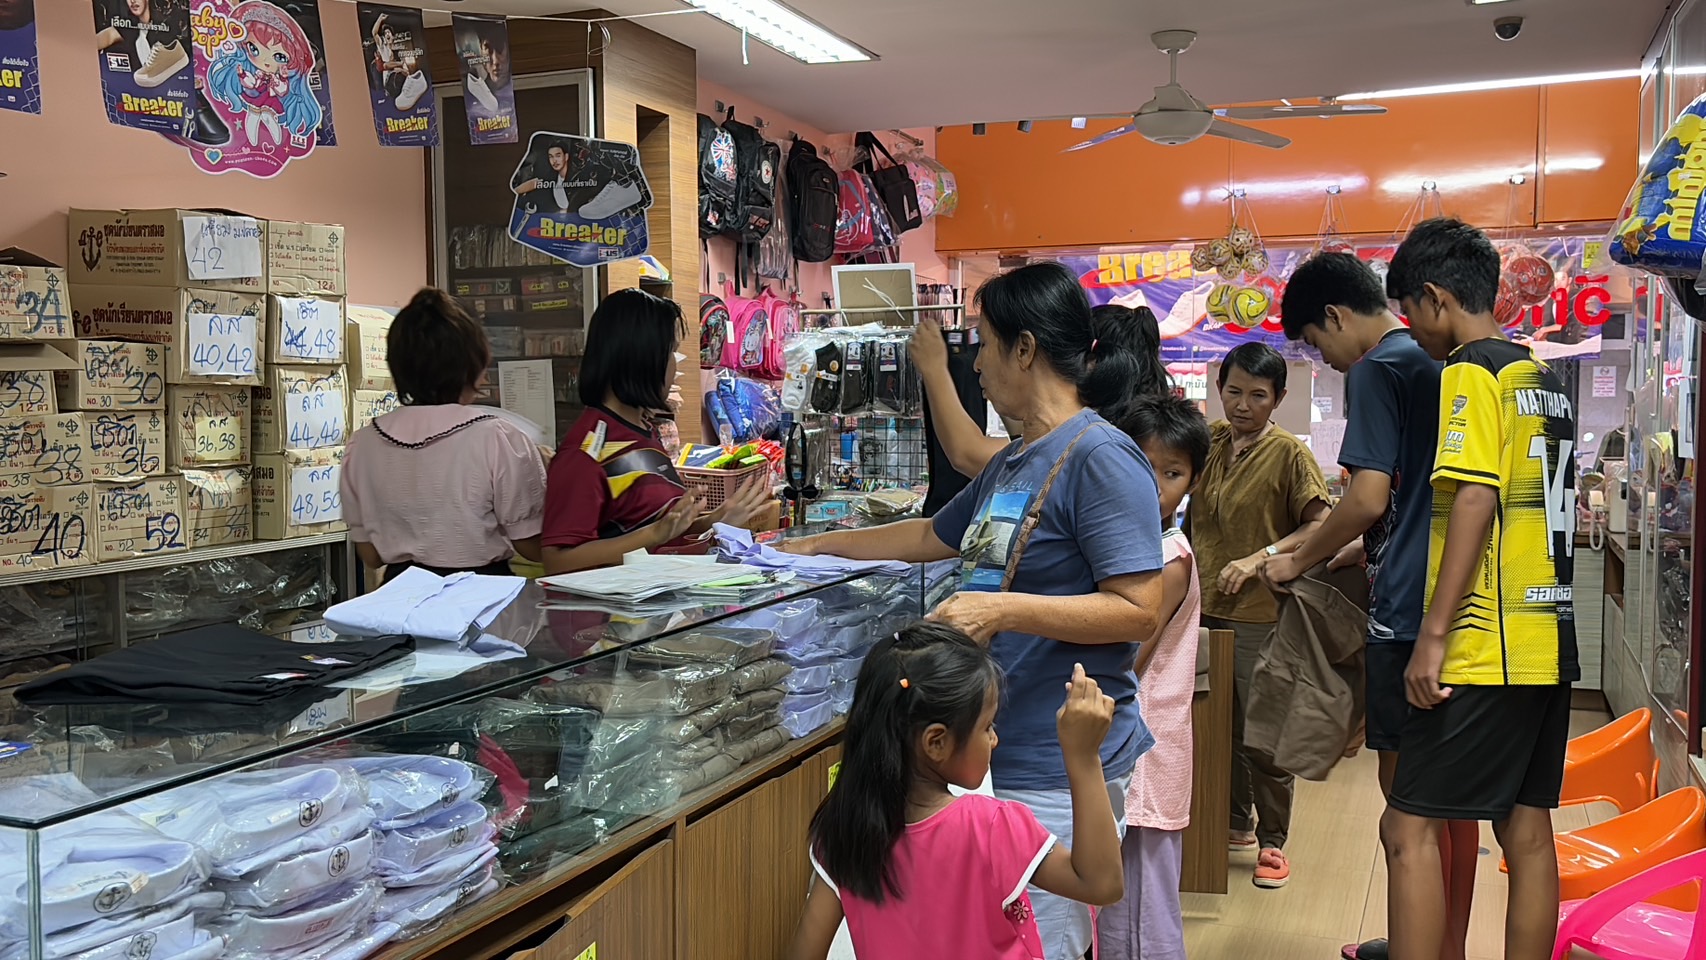 ชลบุรี-คึกคักรับเปิดเทอม..!ผู้ปกครองแห่พาลูกๆซื้อชุดนักเรียนอุปกรณ์การเรียน